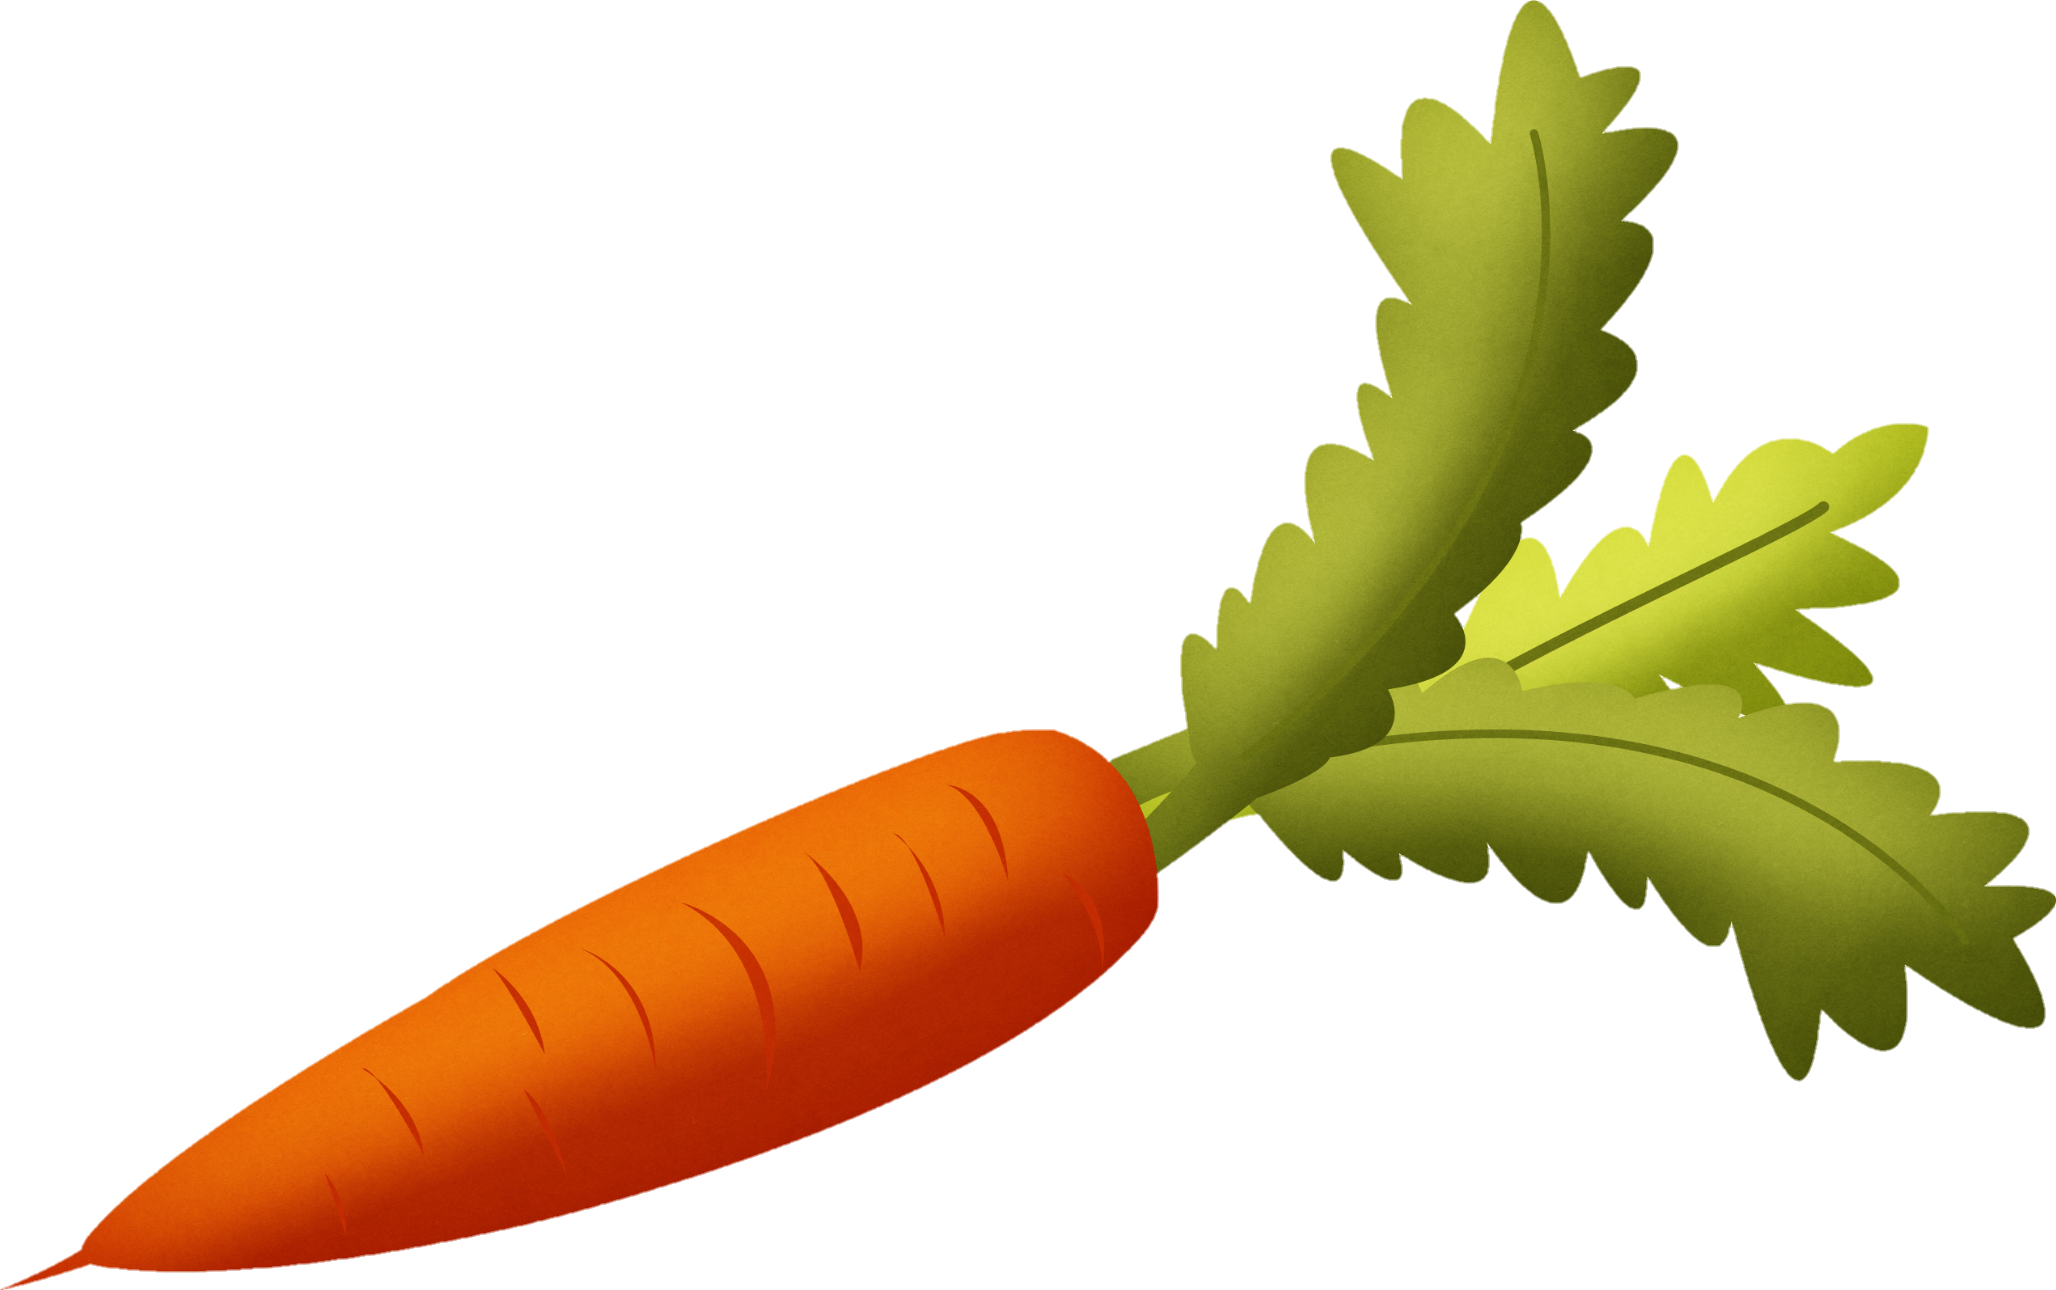 Carrot-7-1